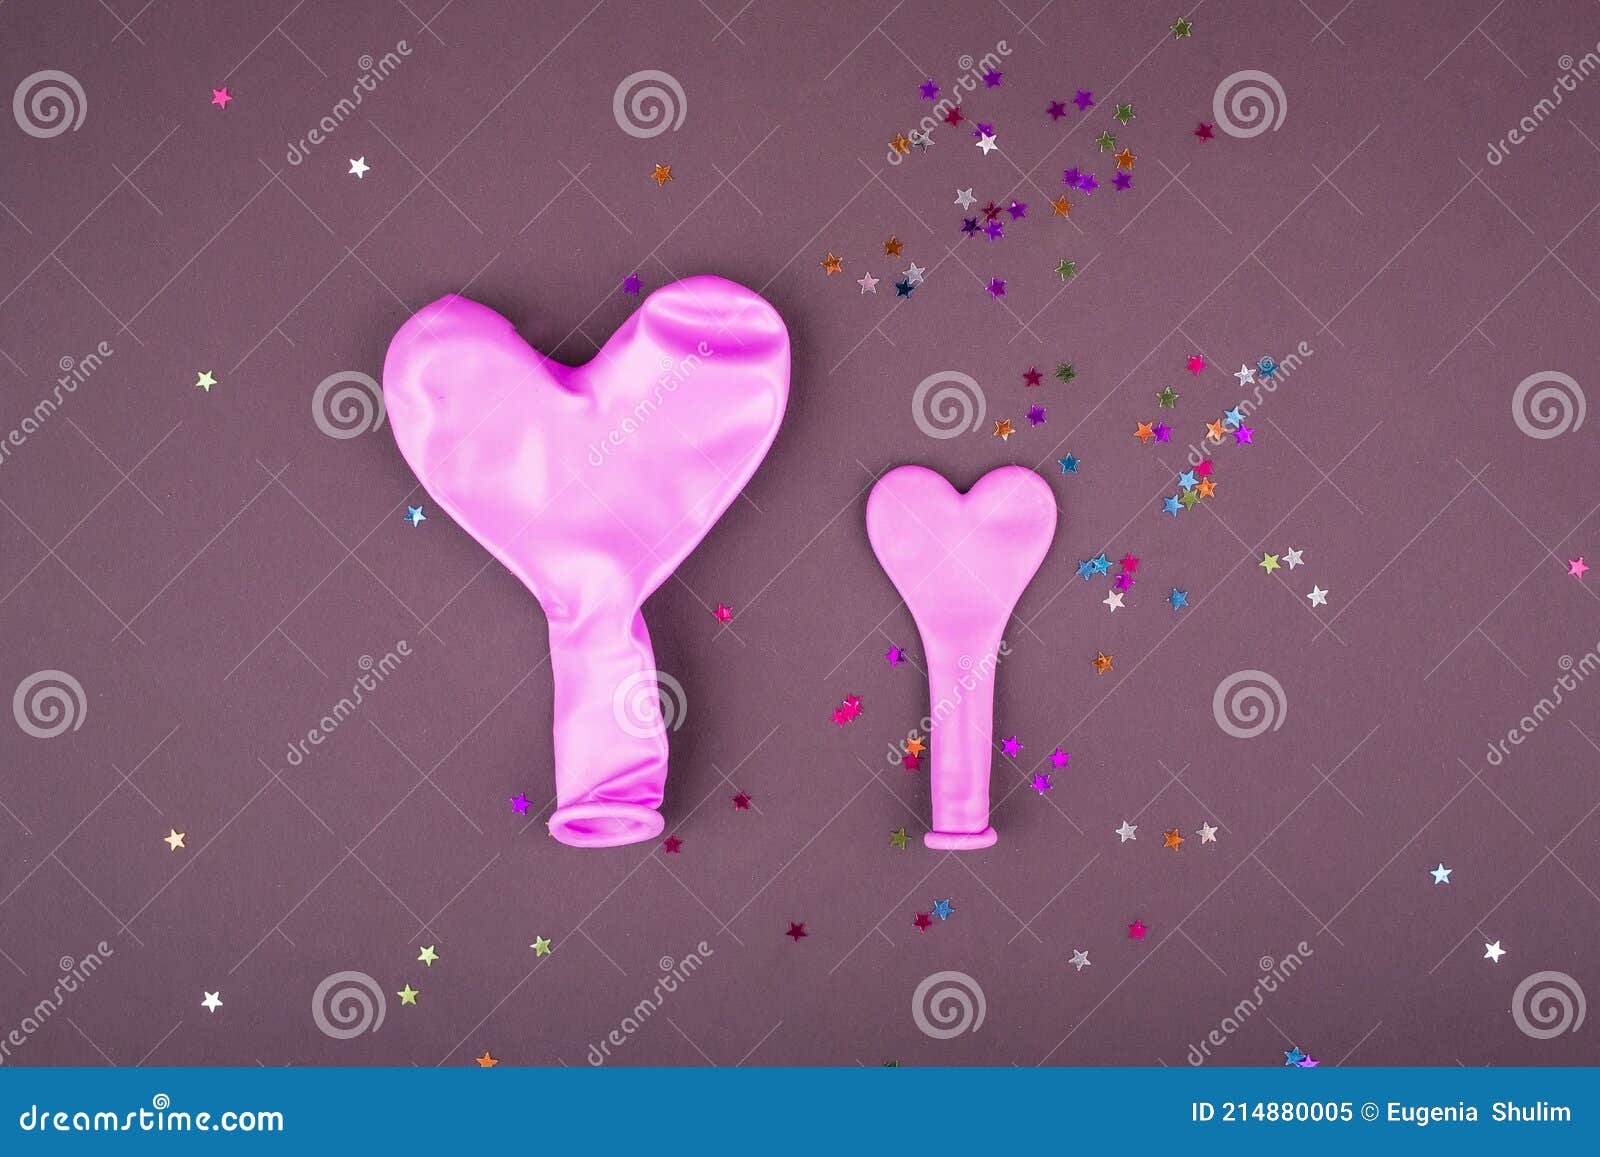 lading door elkaar haspelen Ritueel Twee Roze Ballonnen Voor Het Opblazen Van Lucht En Helium in De Vorm Van  Een Hart. Roze Ballen Op Een Bruine Achtergrond Met Seque Stock Afbeelding  - Image of feestelijk, cadeau: 214880005